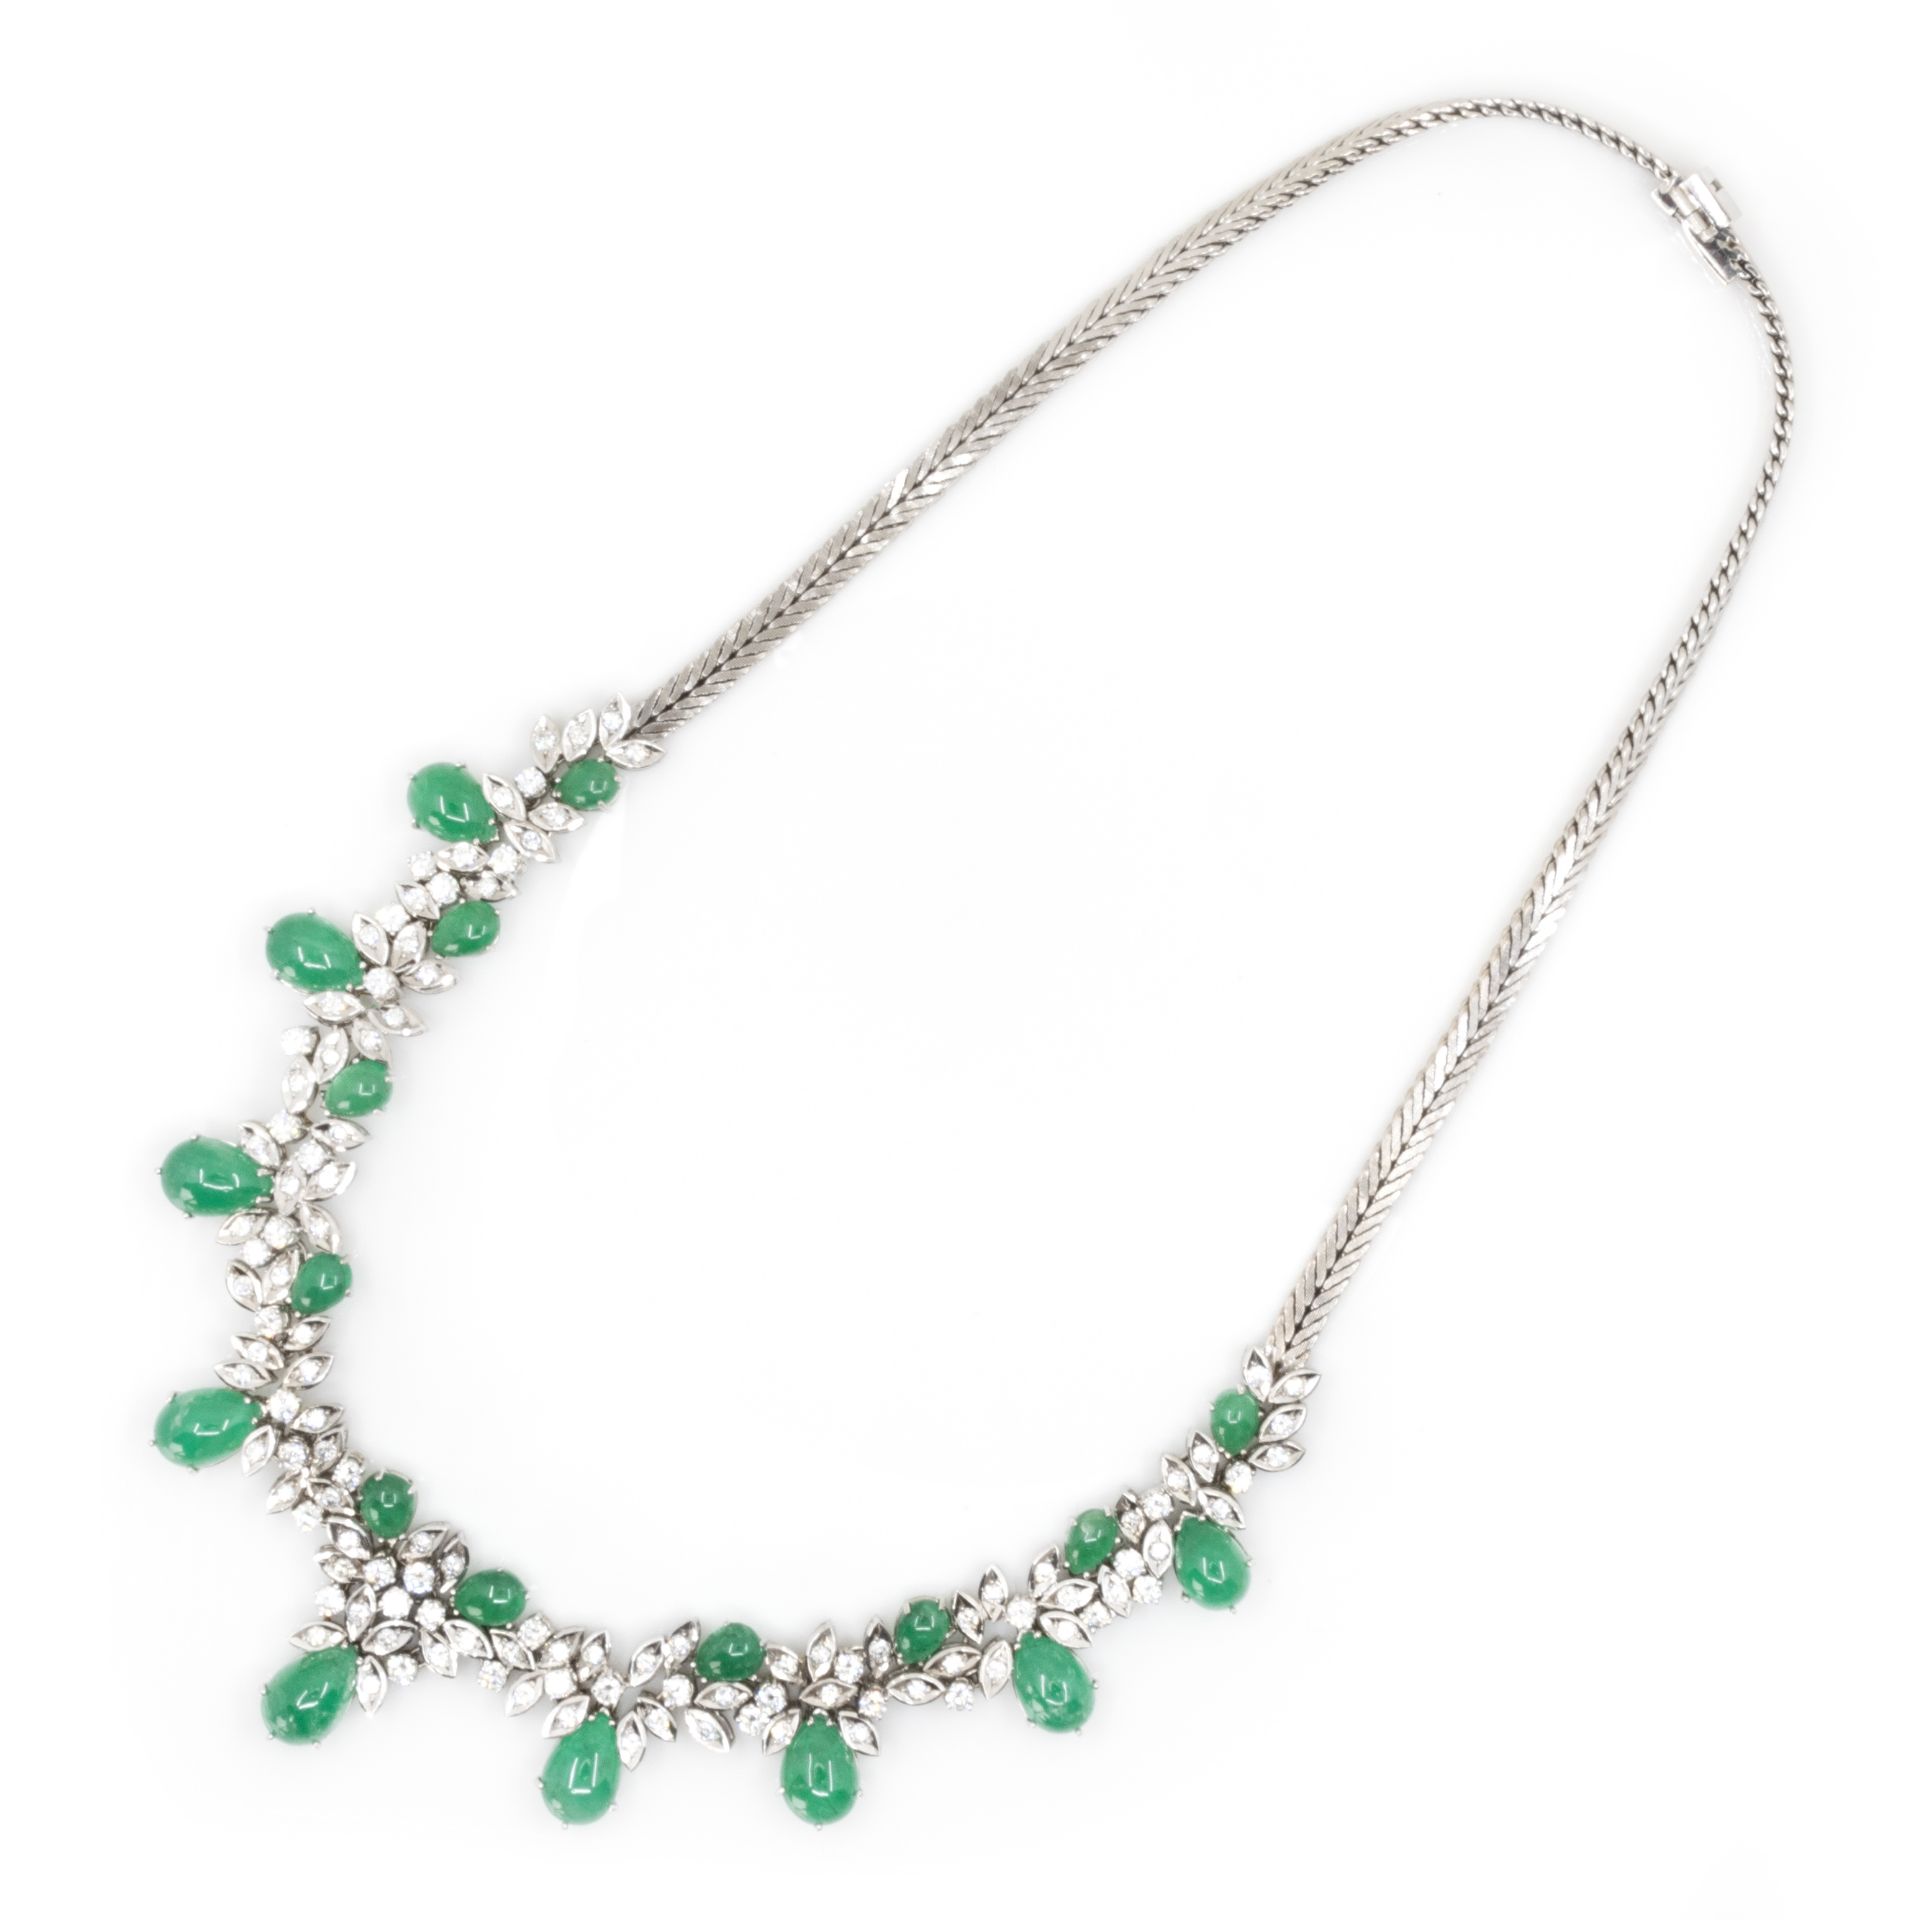 Collier und Armband mit Smaragd-Diamantbesatz - Image 2 of 8